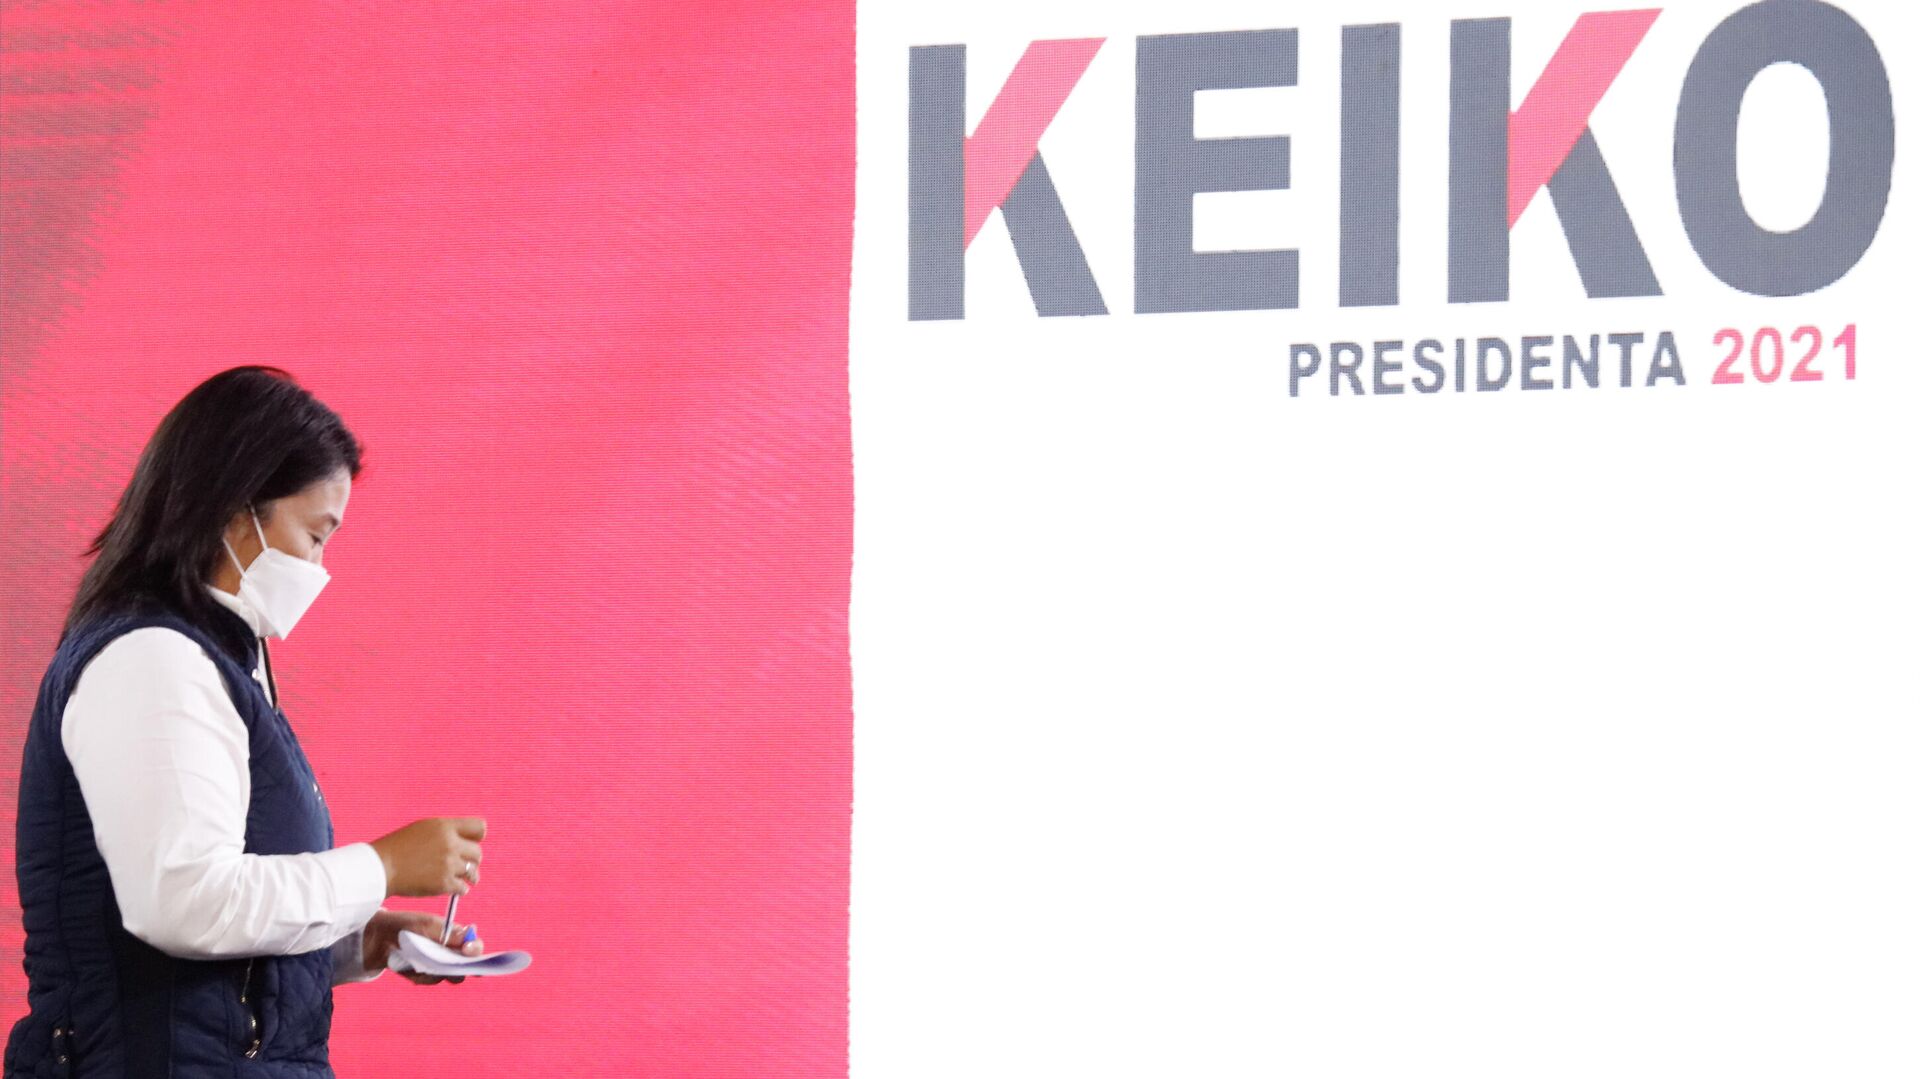 La candidata a la Presidencia, Keiko Fujimori, luego de denunciar fraude en las elecciones de 2021 - Sputnik Mundo, 1920, 23.08.2021